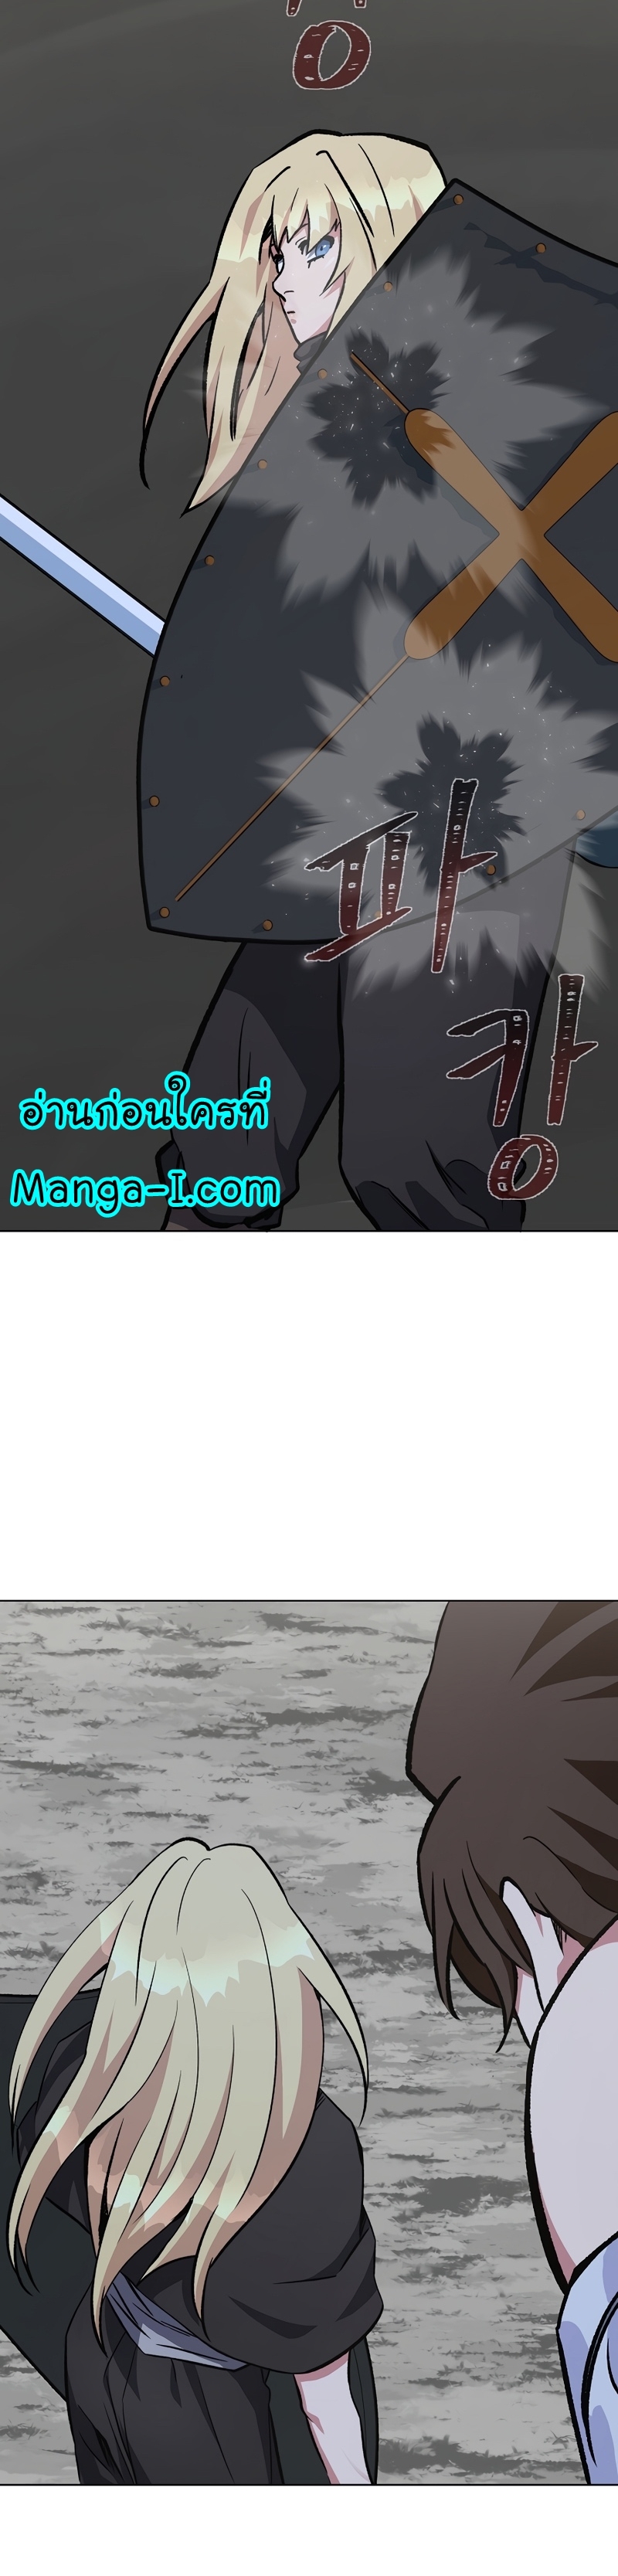 Manga Manhwa Level 1 Player 65 (33)